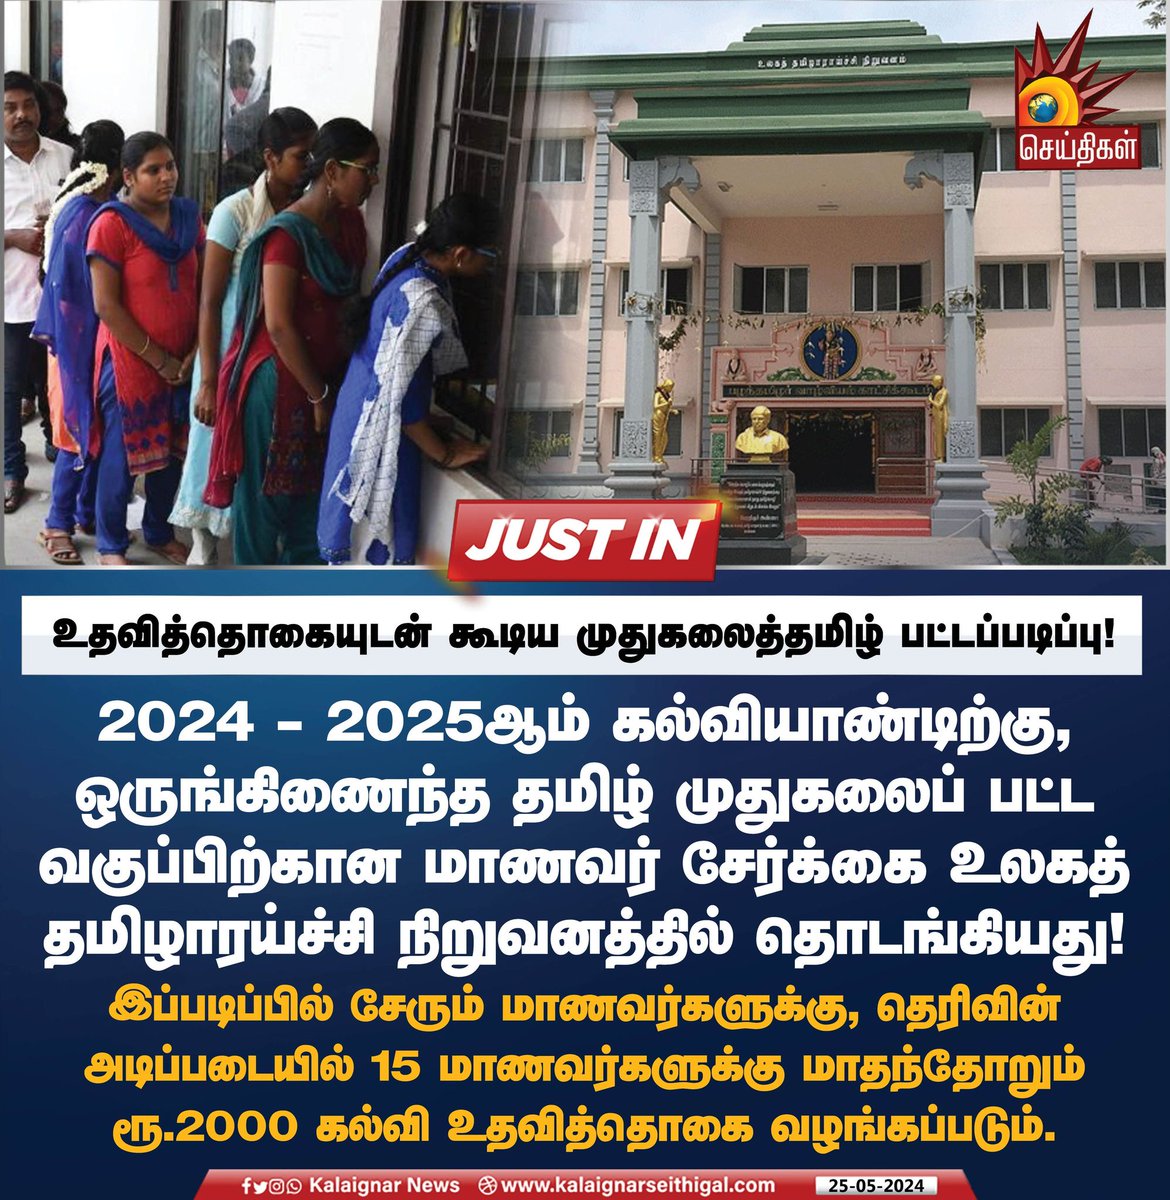 உதவித்தொகையுடன் கூடிய முதுகலைத்தமிழ் பட்டப்படிப்பு!

#TamilNadu #Tamil #kalaignarSeithigal